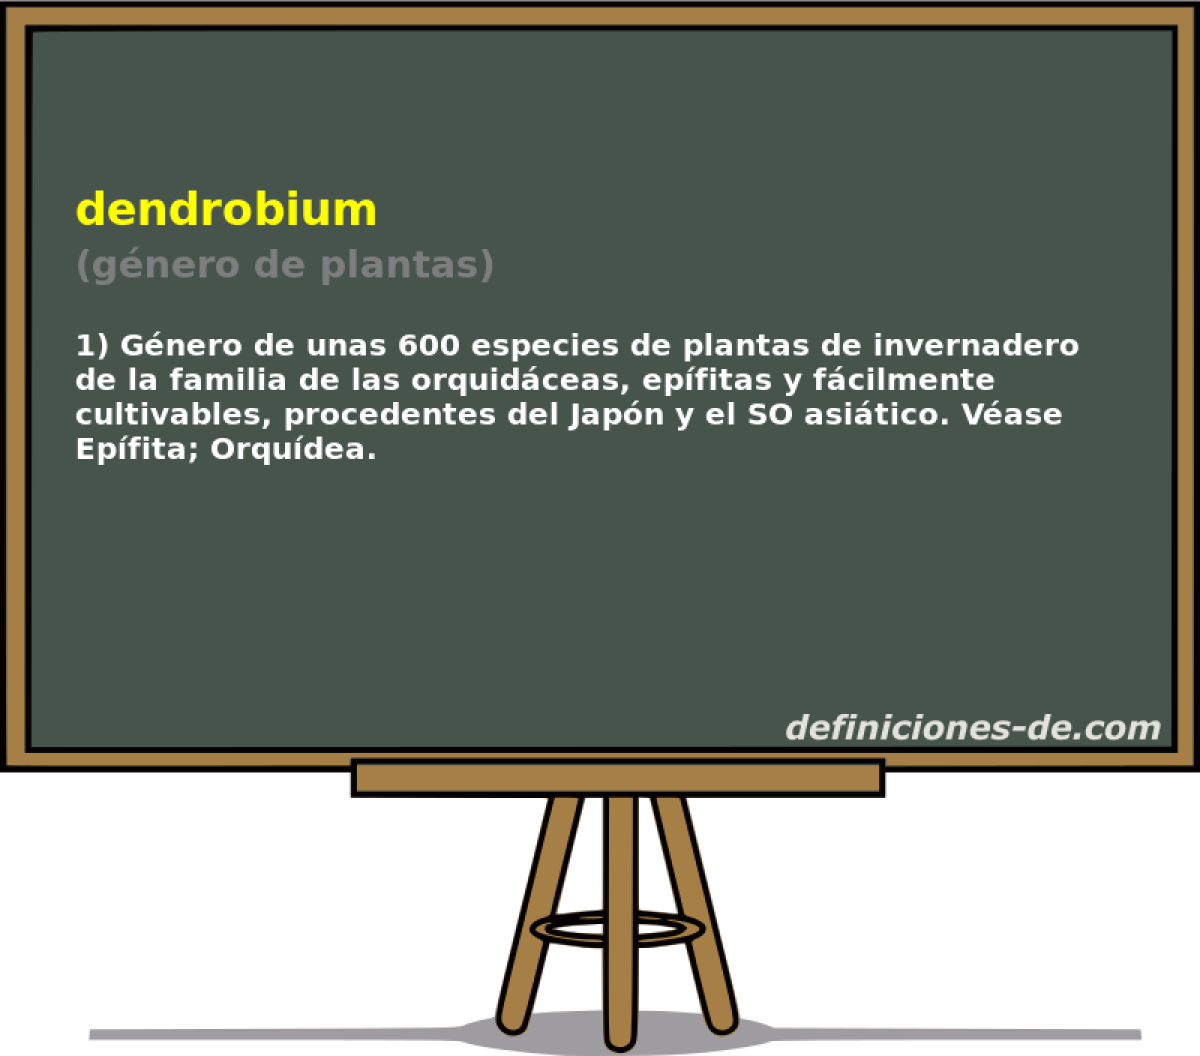 dendrobium (gnero de plantas)